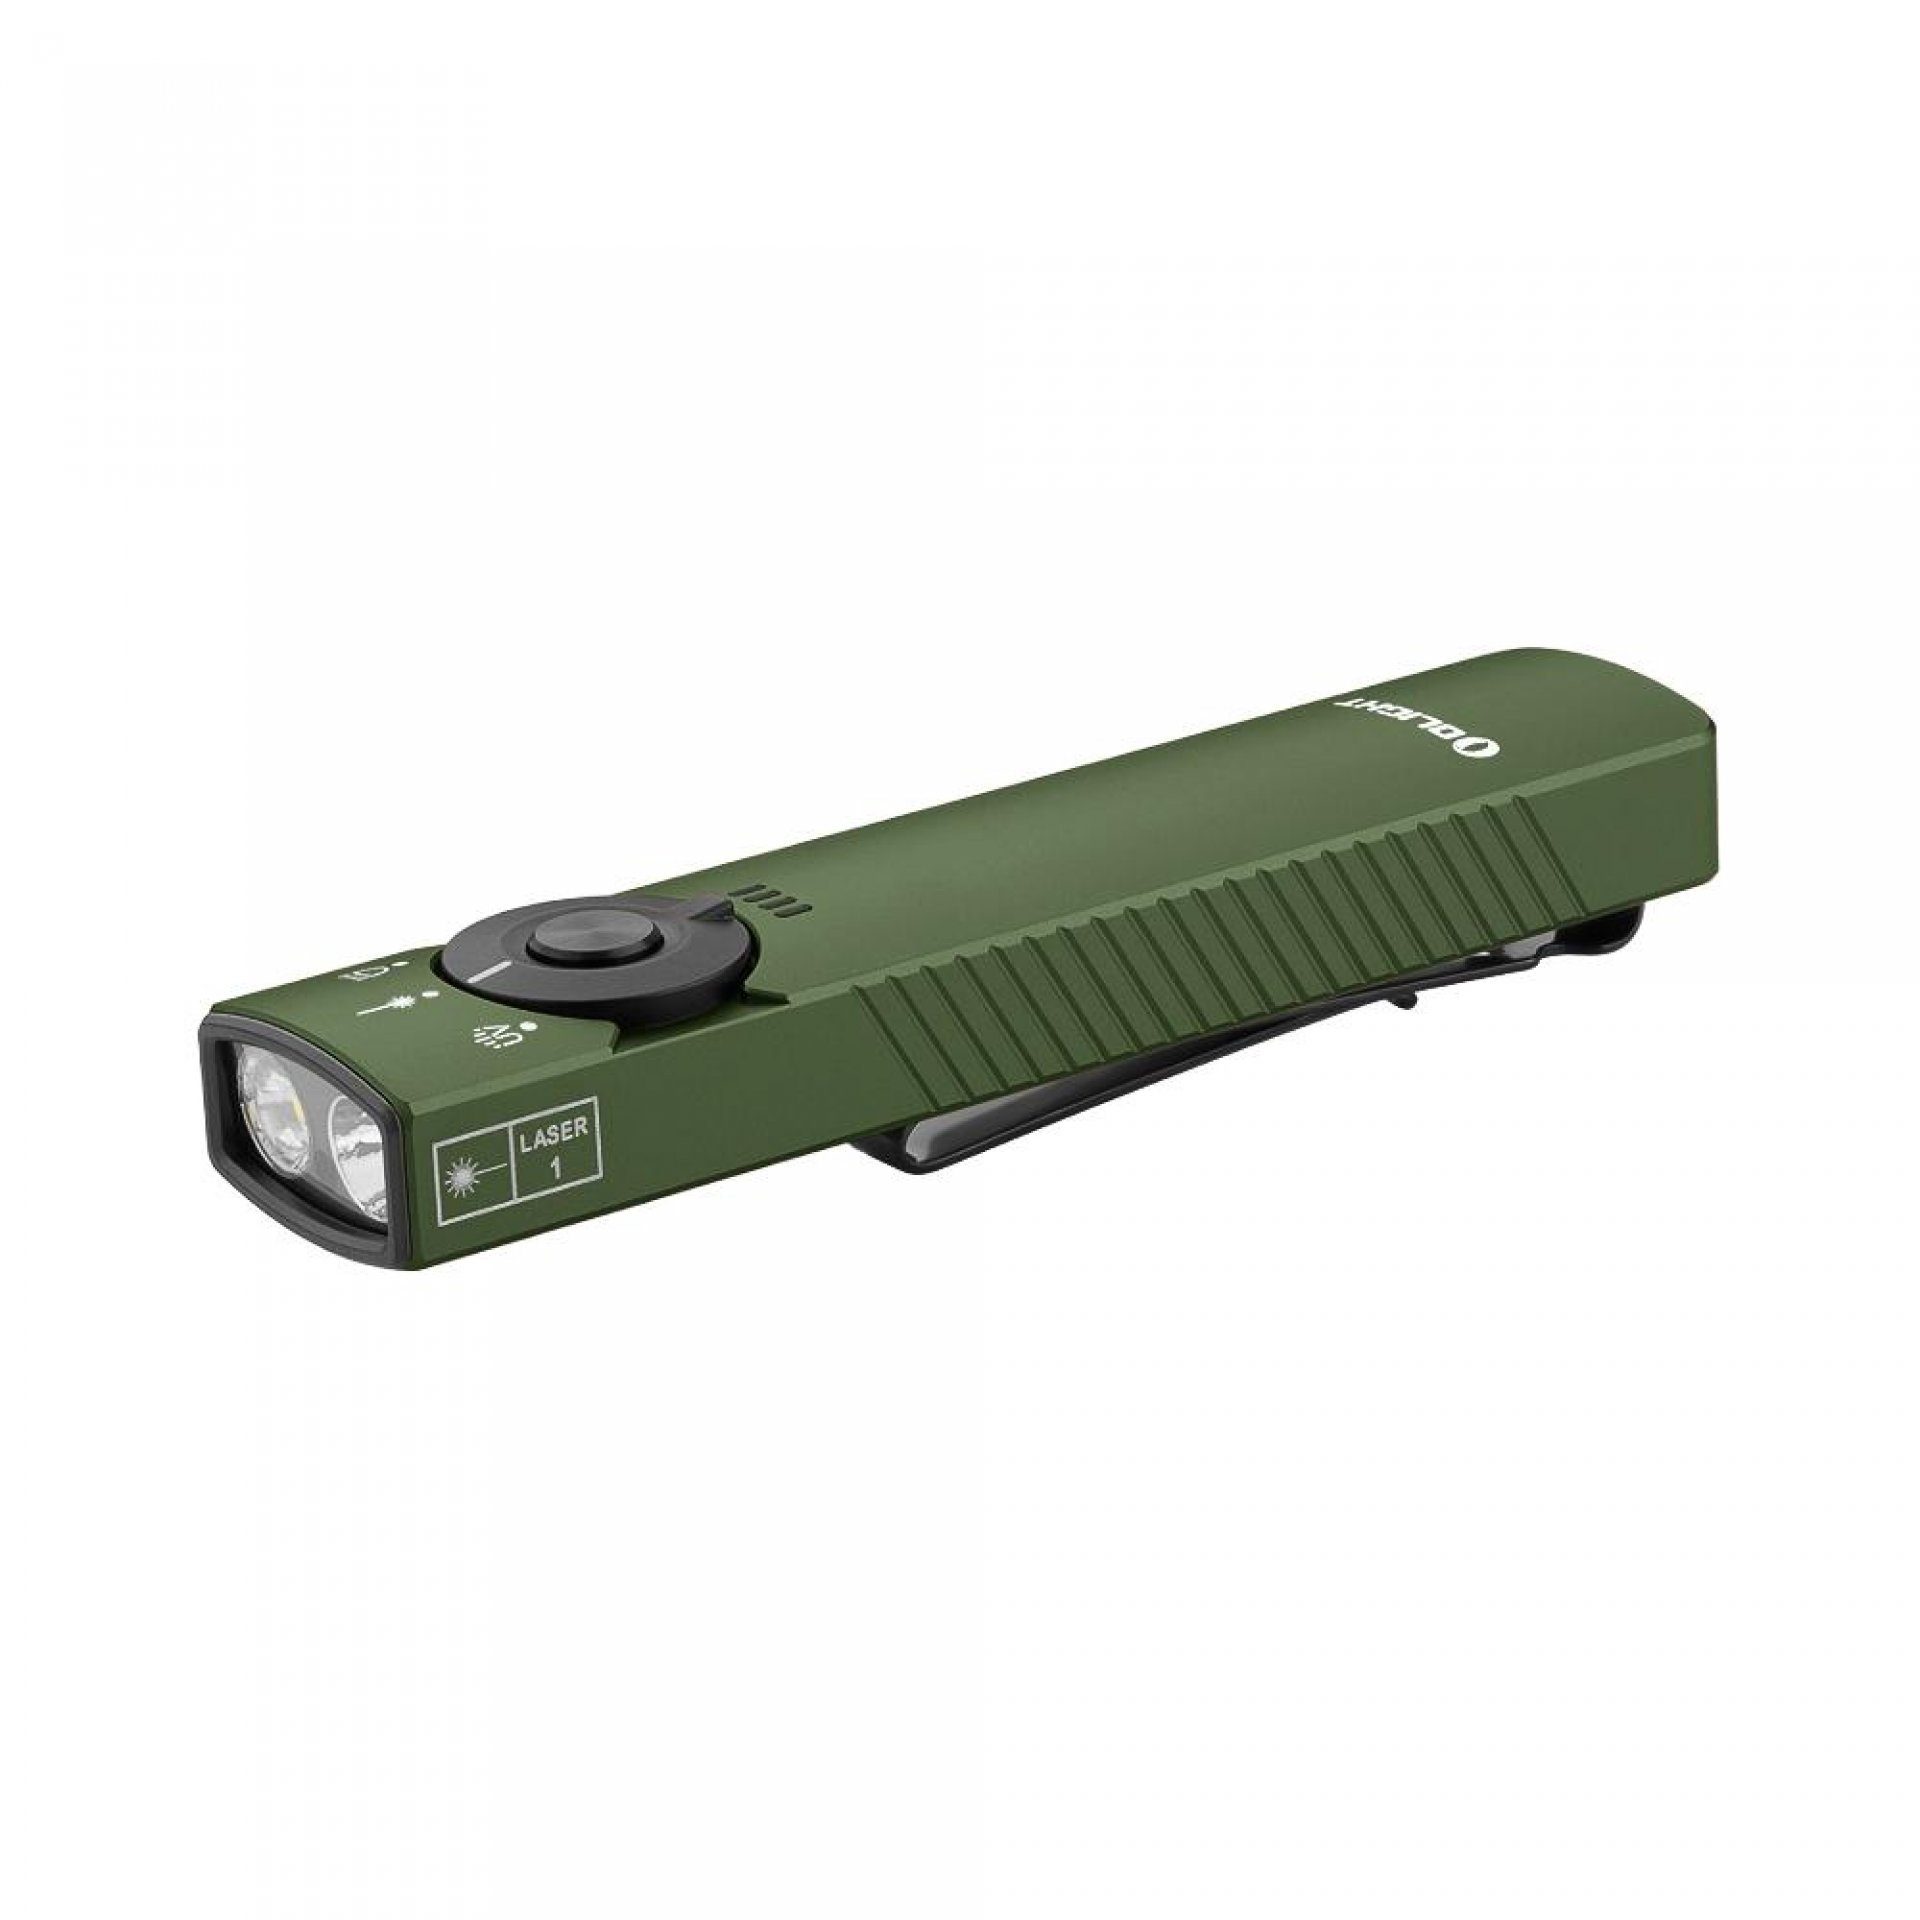 Green Arkfeld Lichtquelle Klasse OD 1 mit OLIGHT Taschenlampe drei Taschenlampe EDC Pro